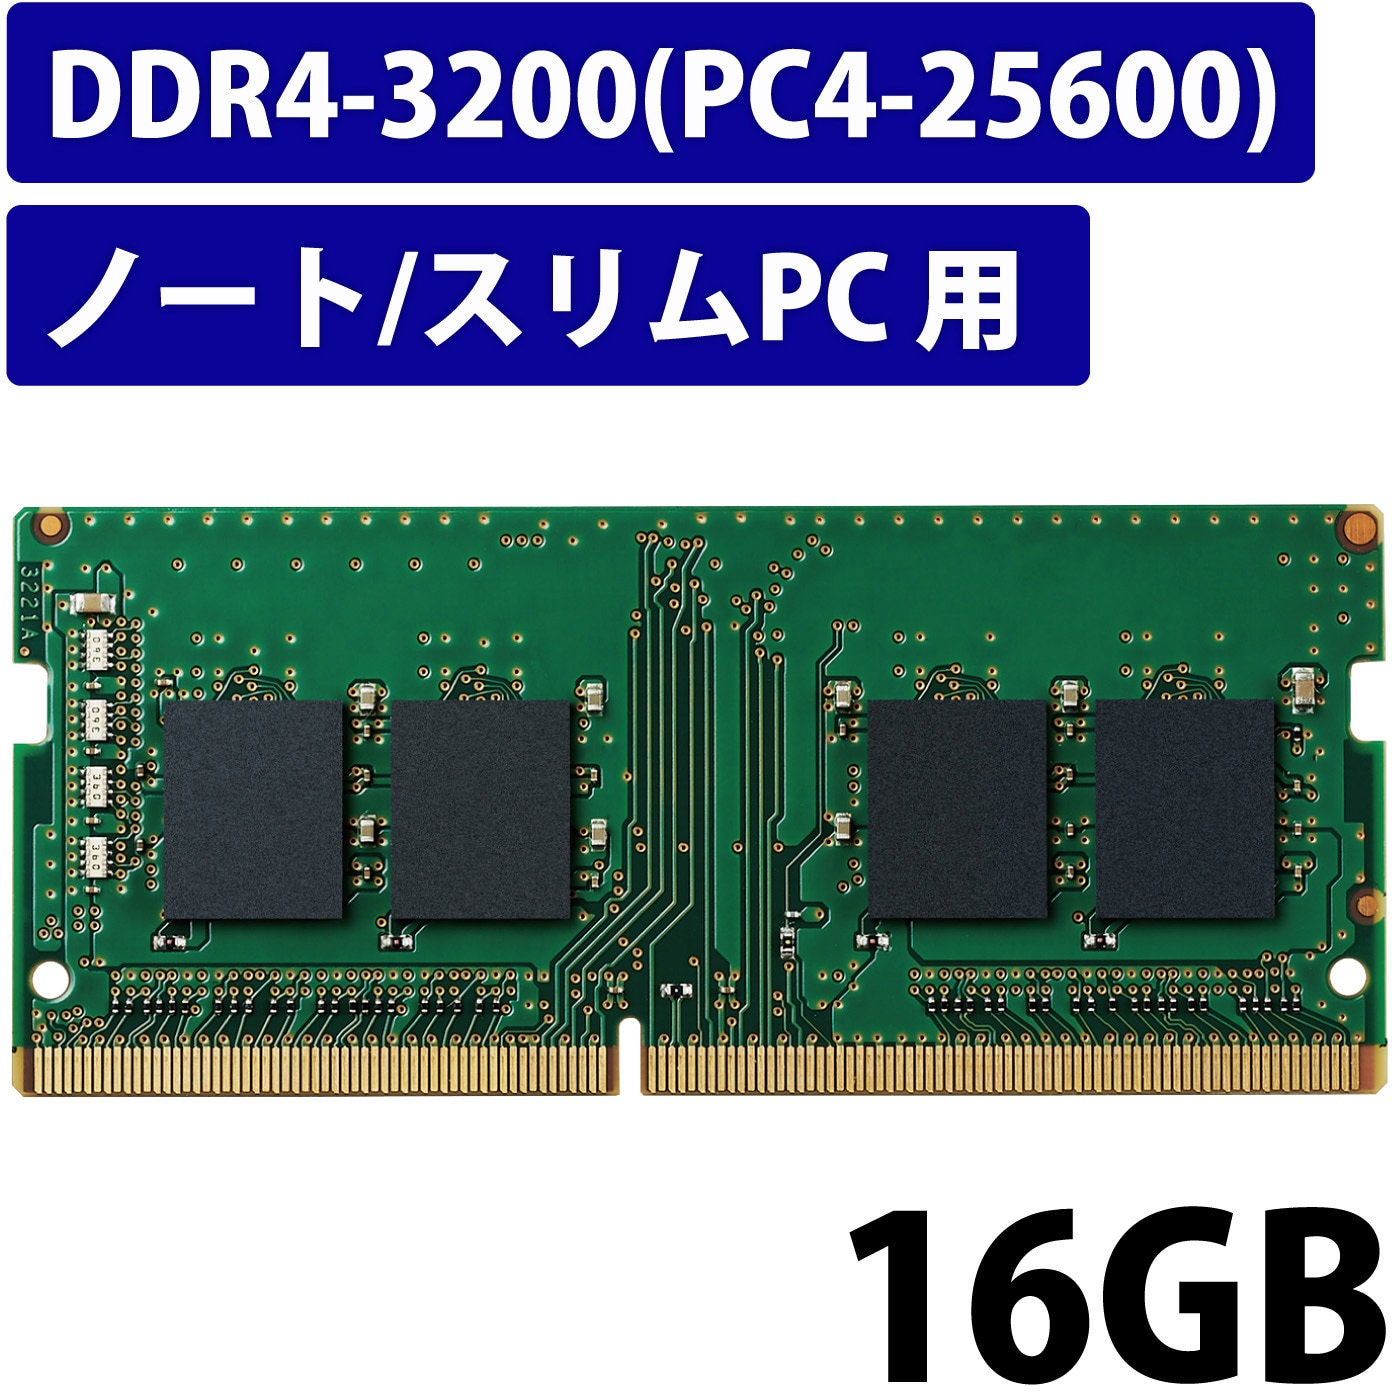 バッファロー 法人向けPC4-25600(DDR4-3200)対応 260ピン DDR4 SO-DIMM32GB MV-D4N3200-32G  外付けメモリーカードリーダー